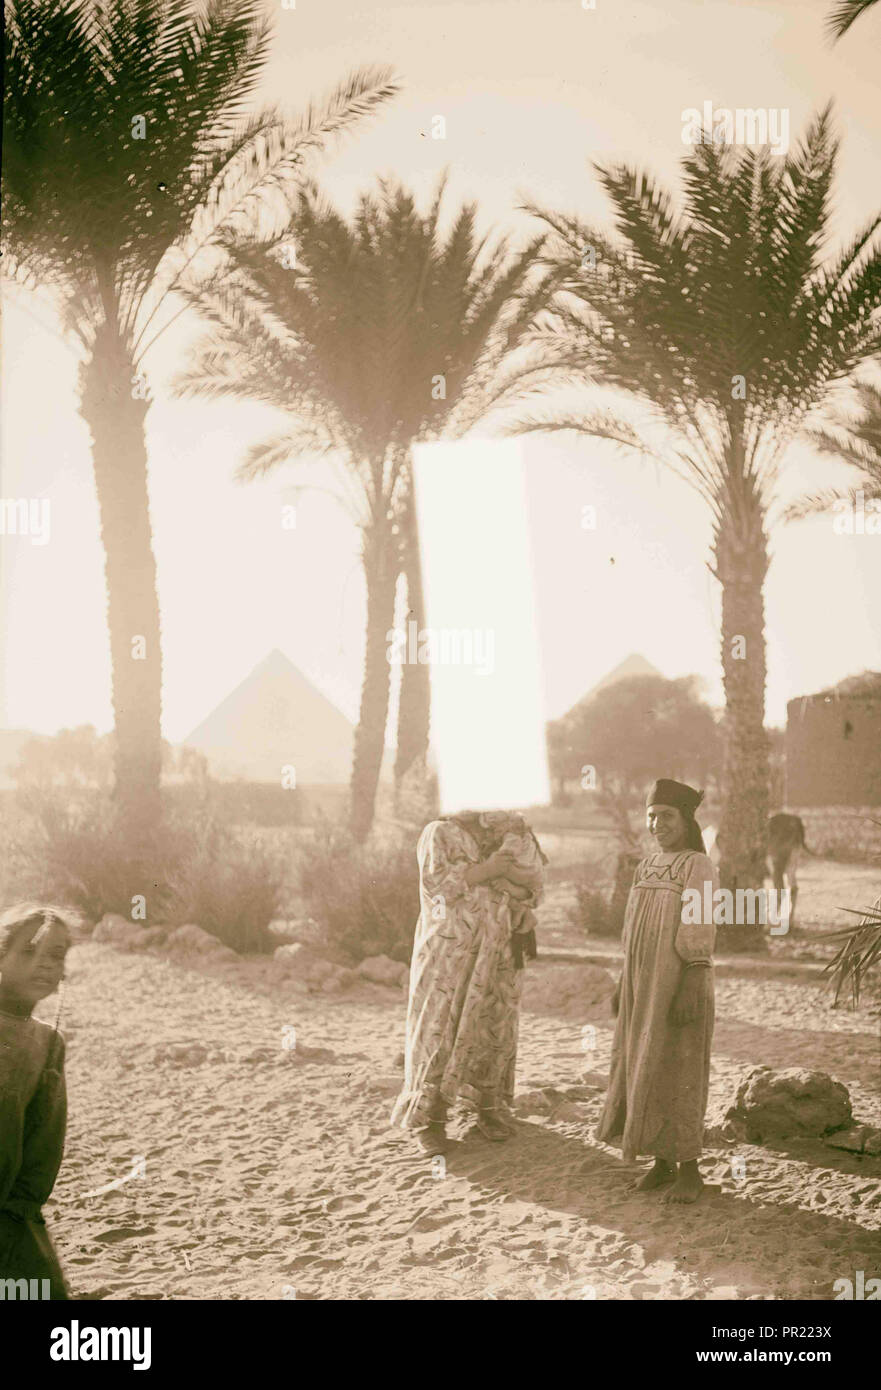 L'Égypte. Types d'agriculture. Paysan avec leurs enfants à Palm Grove (montrant des pyramides). 1934, l'Égypte Banque D'Images